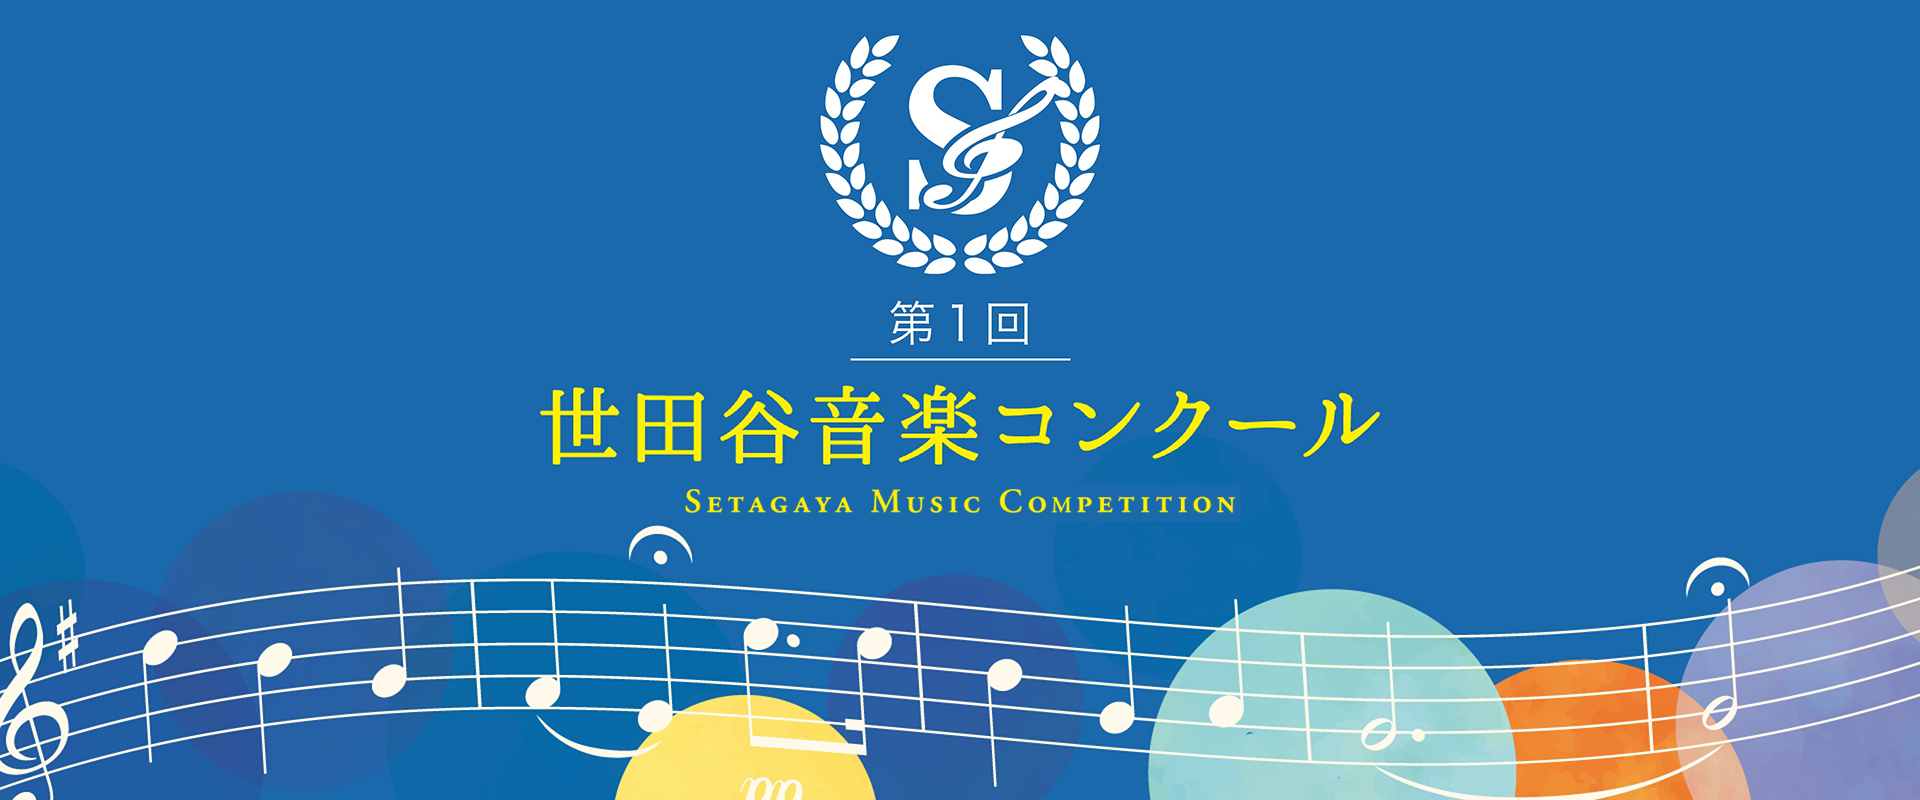 第1回 世田谷音楽コンクール – Setagaya Music Competition